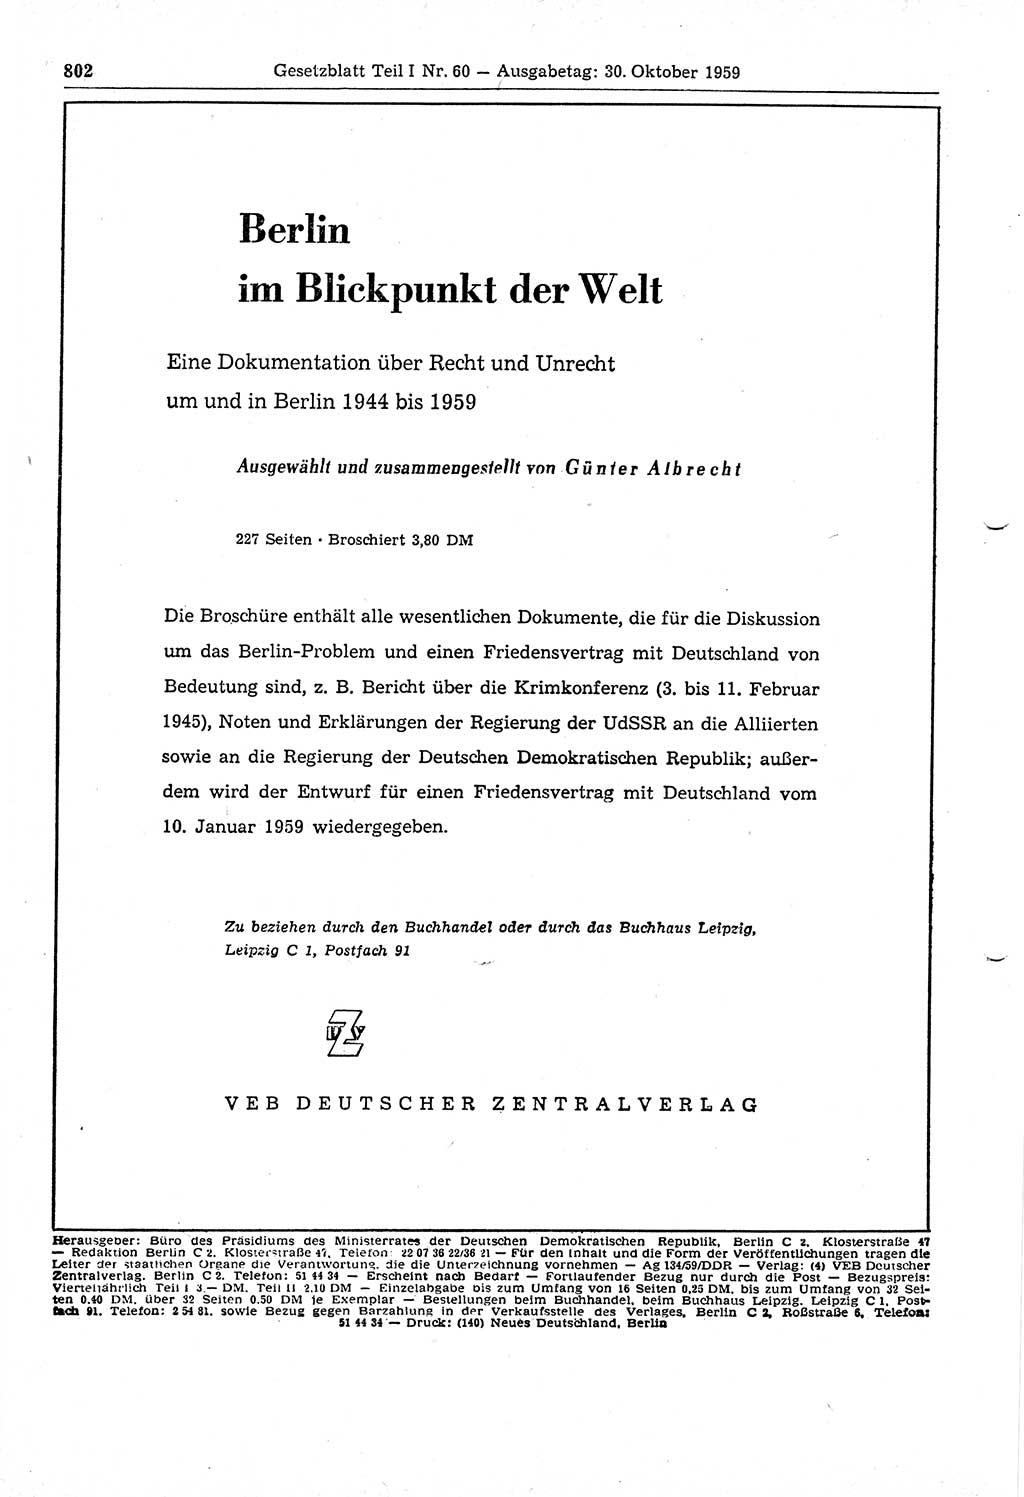 Gesetzblatt (GBl.) der Deutschen Demokratischen Republik (DDR) Teil Ⅰ 1959, Seite 802 (GBl. DDR Ⅰ 1959, S. 802)